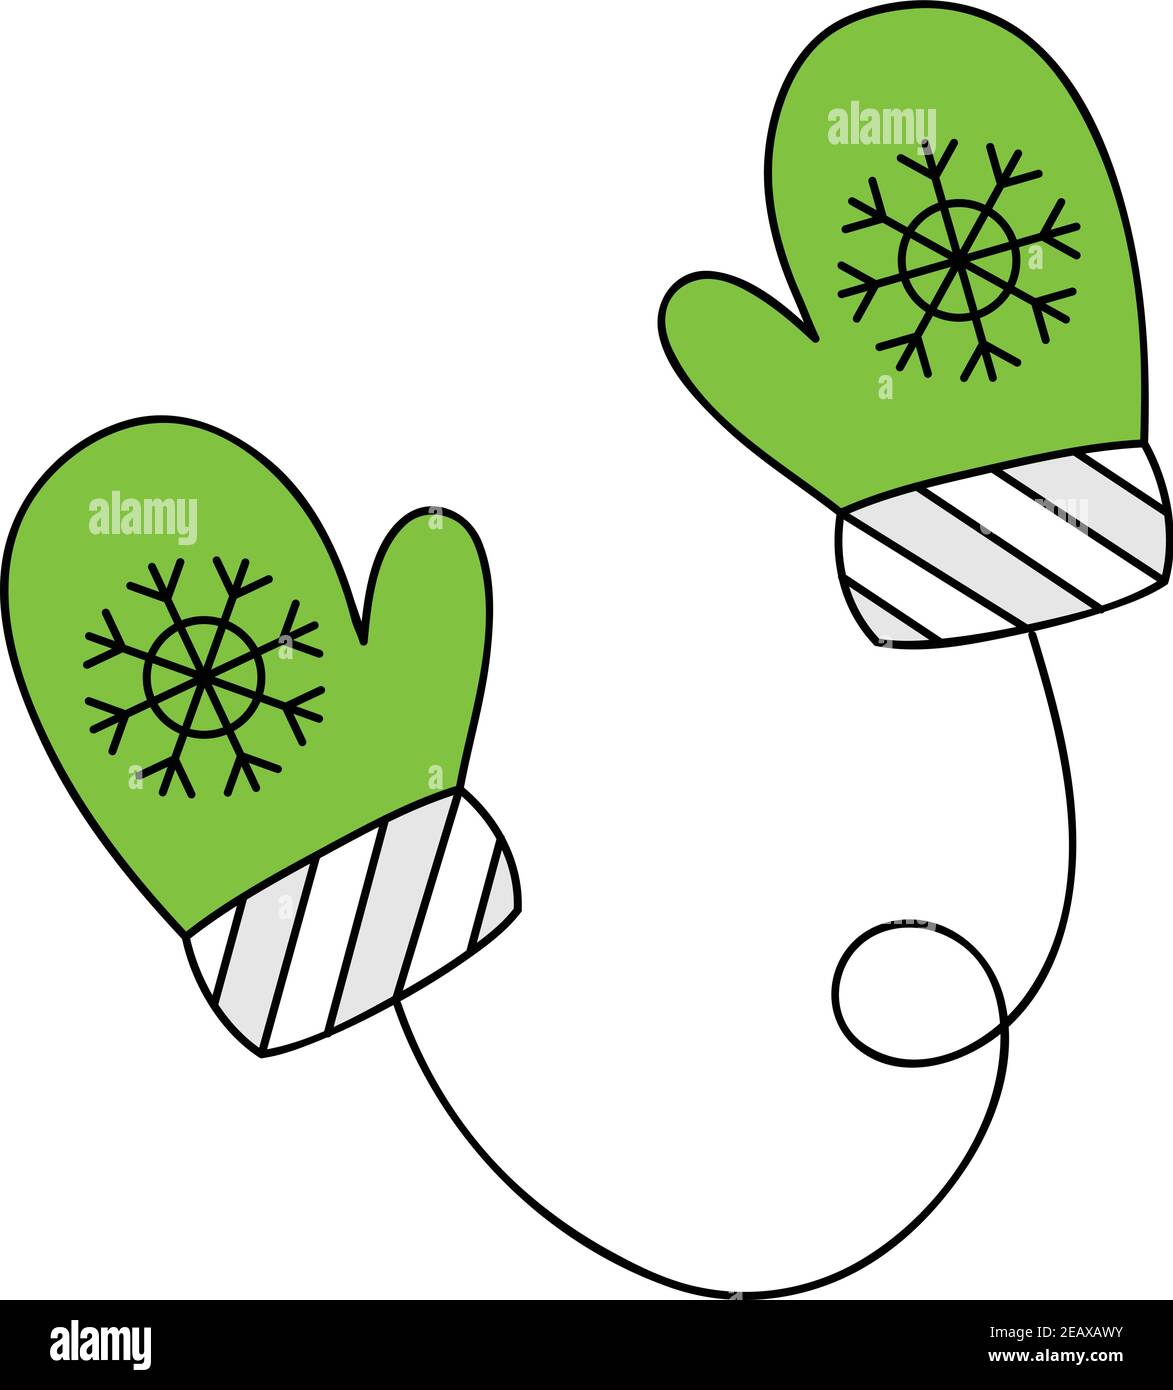 Icône d'illustration à contour vectoriel de moufles mignonnes. Hiver, noël,  saison, gants tricotés, moufles vertes et blanches avec flocon de neige sur  ficelle Image Vectorielle Stock - Alamy